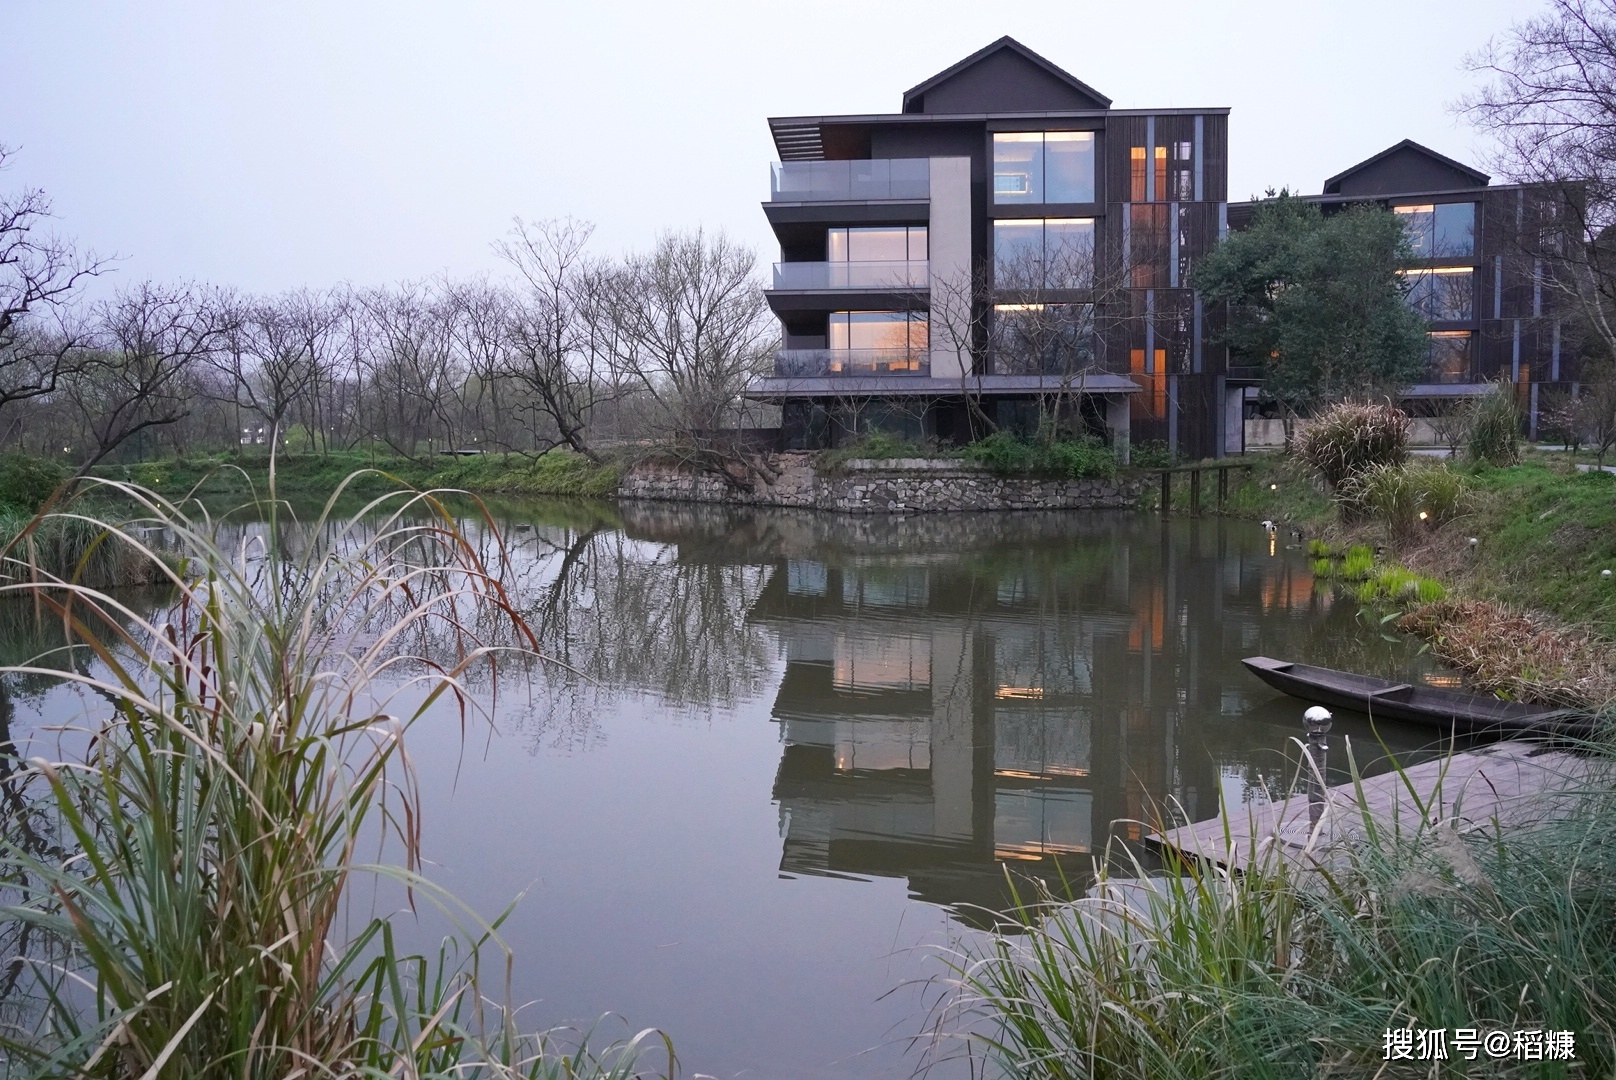 杭州木守西溪酒店是专为西溪湿地打造的一家设计酒店,藏在西溪湿地的